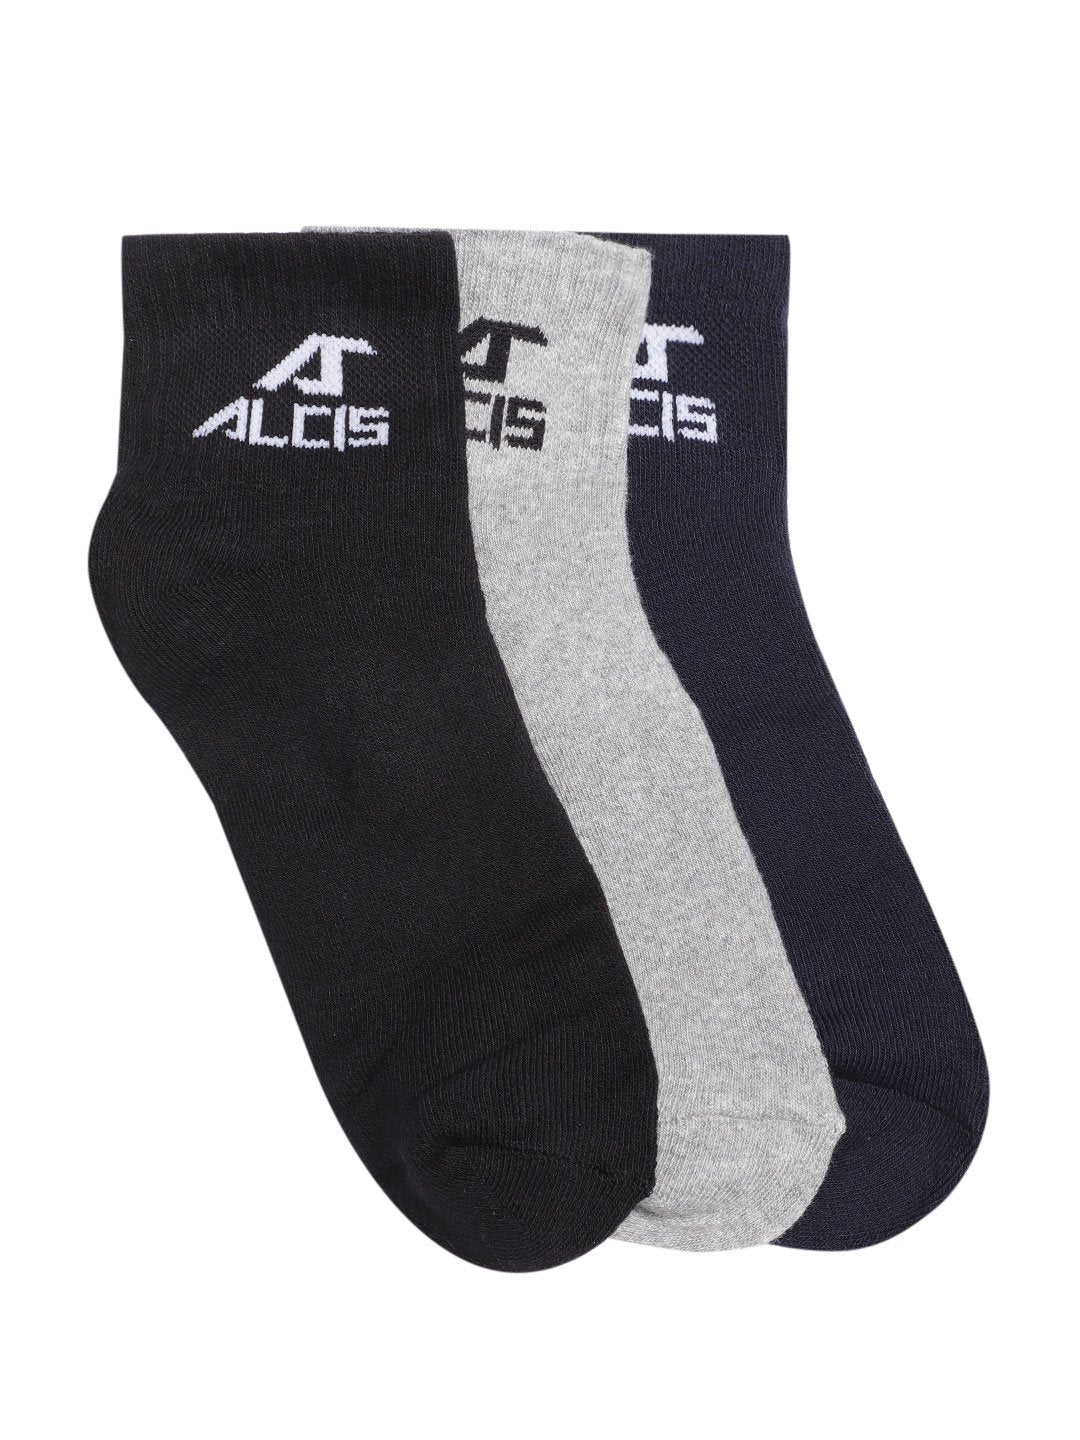 Alcis Men Pack of 3 Ankle Length Socks Full Terry